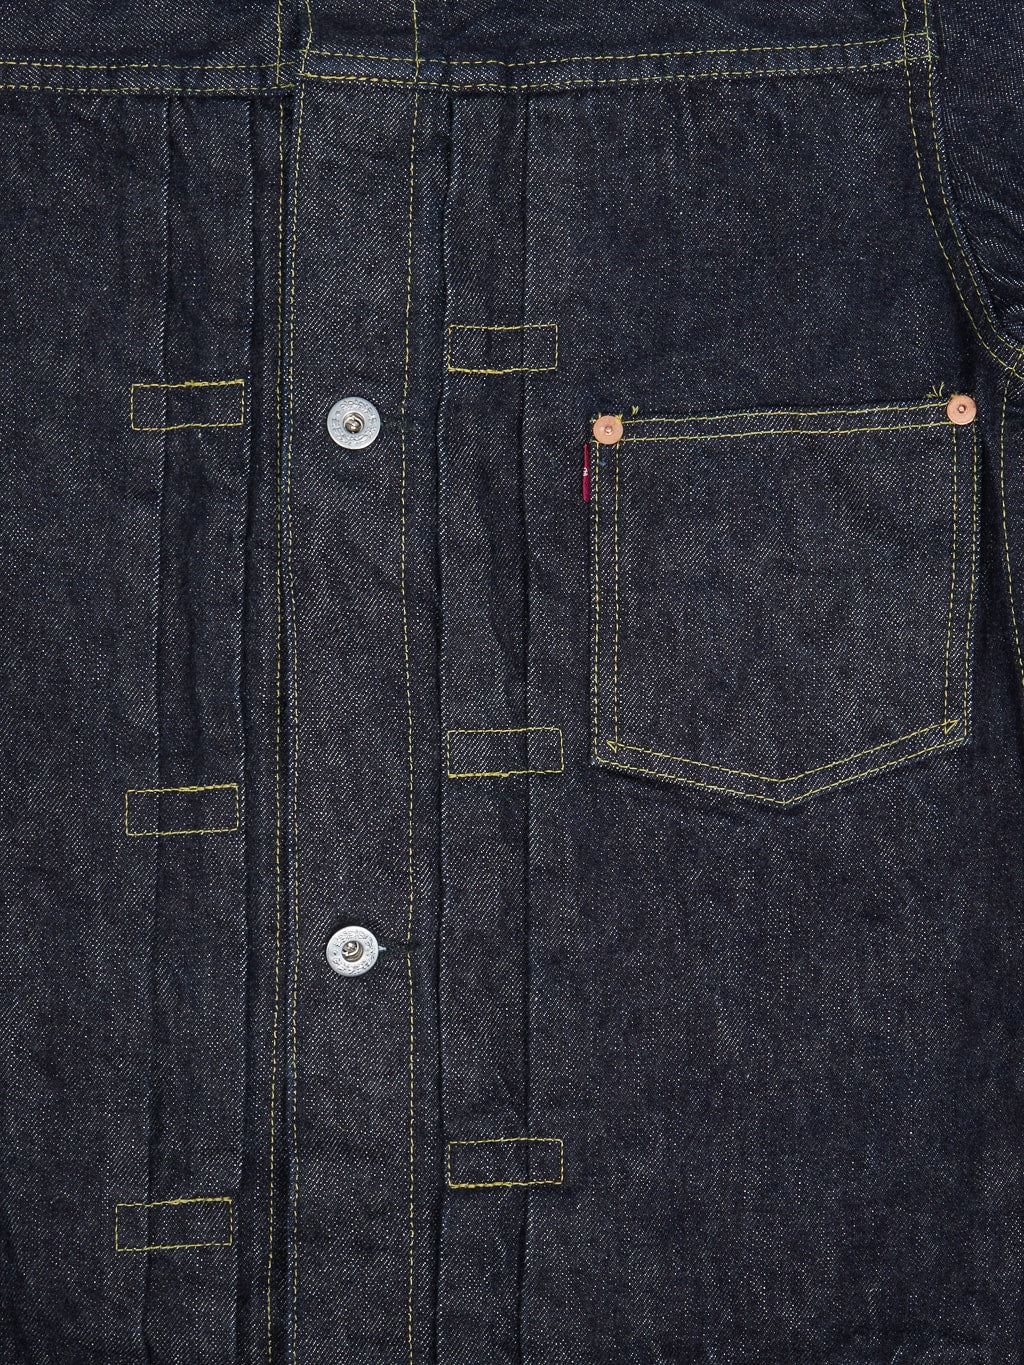 tcb 40s denim jacket chest front details